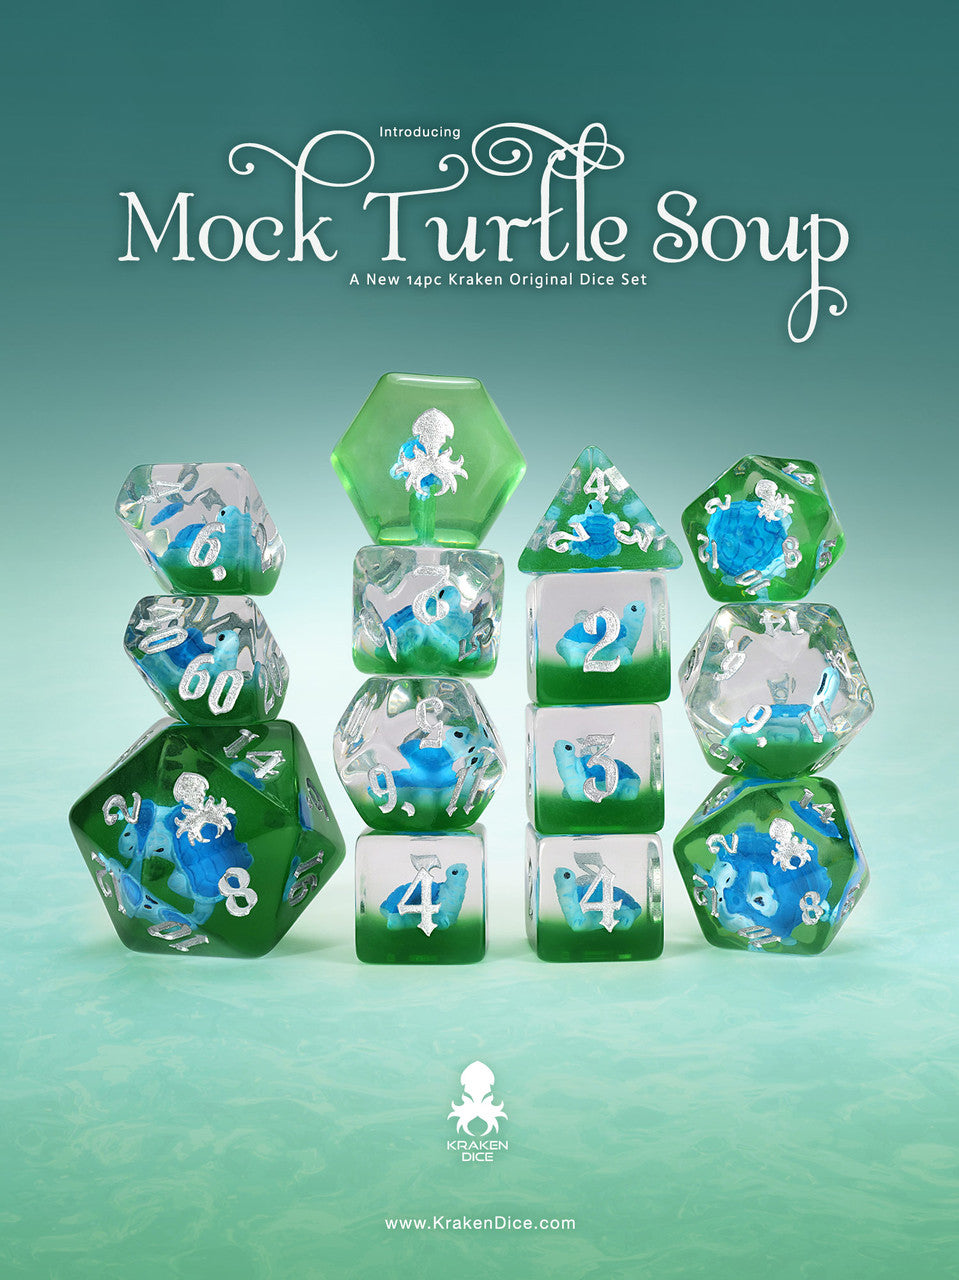 MockTurtle Soup 14pc Turtle Inclusion Dice Set